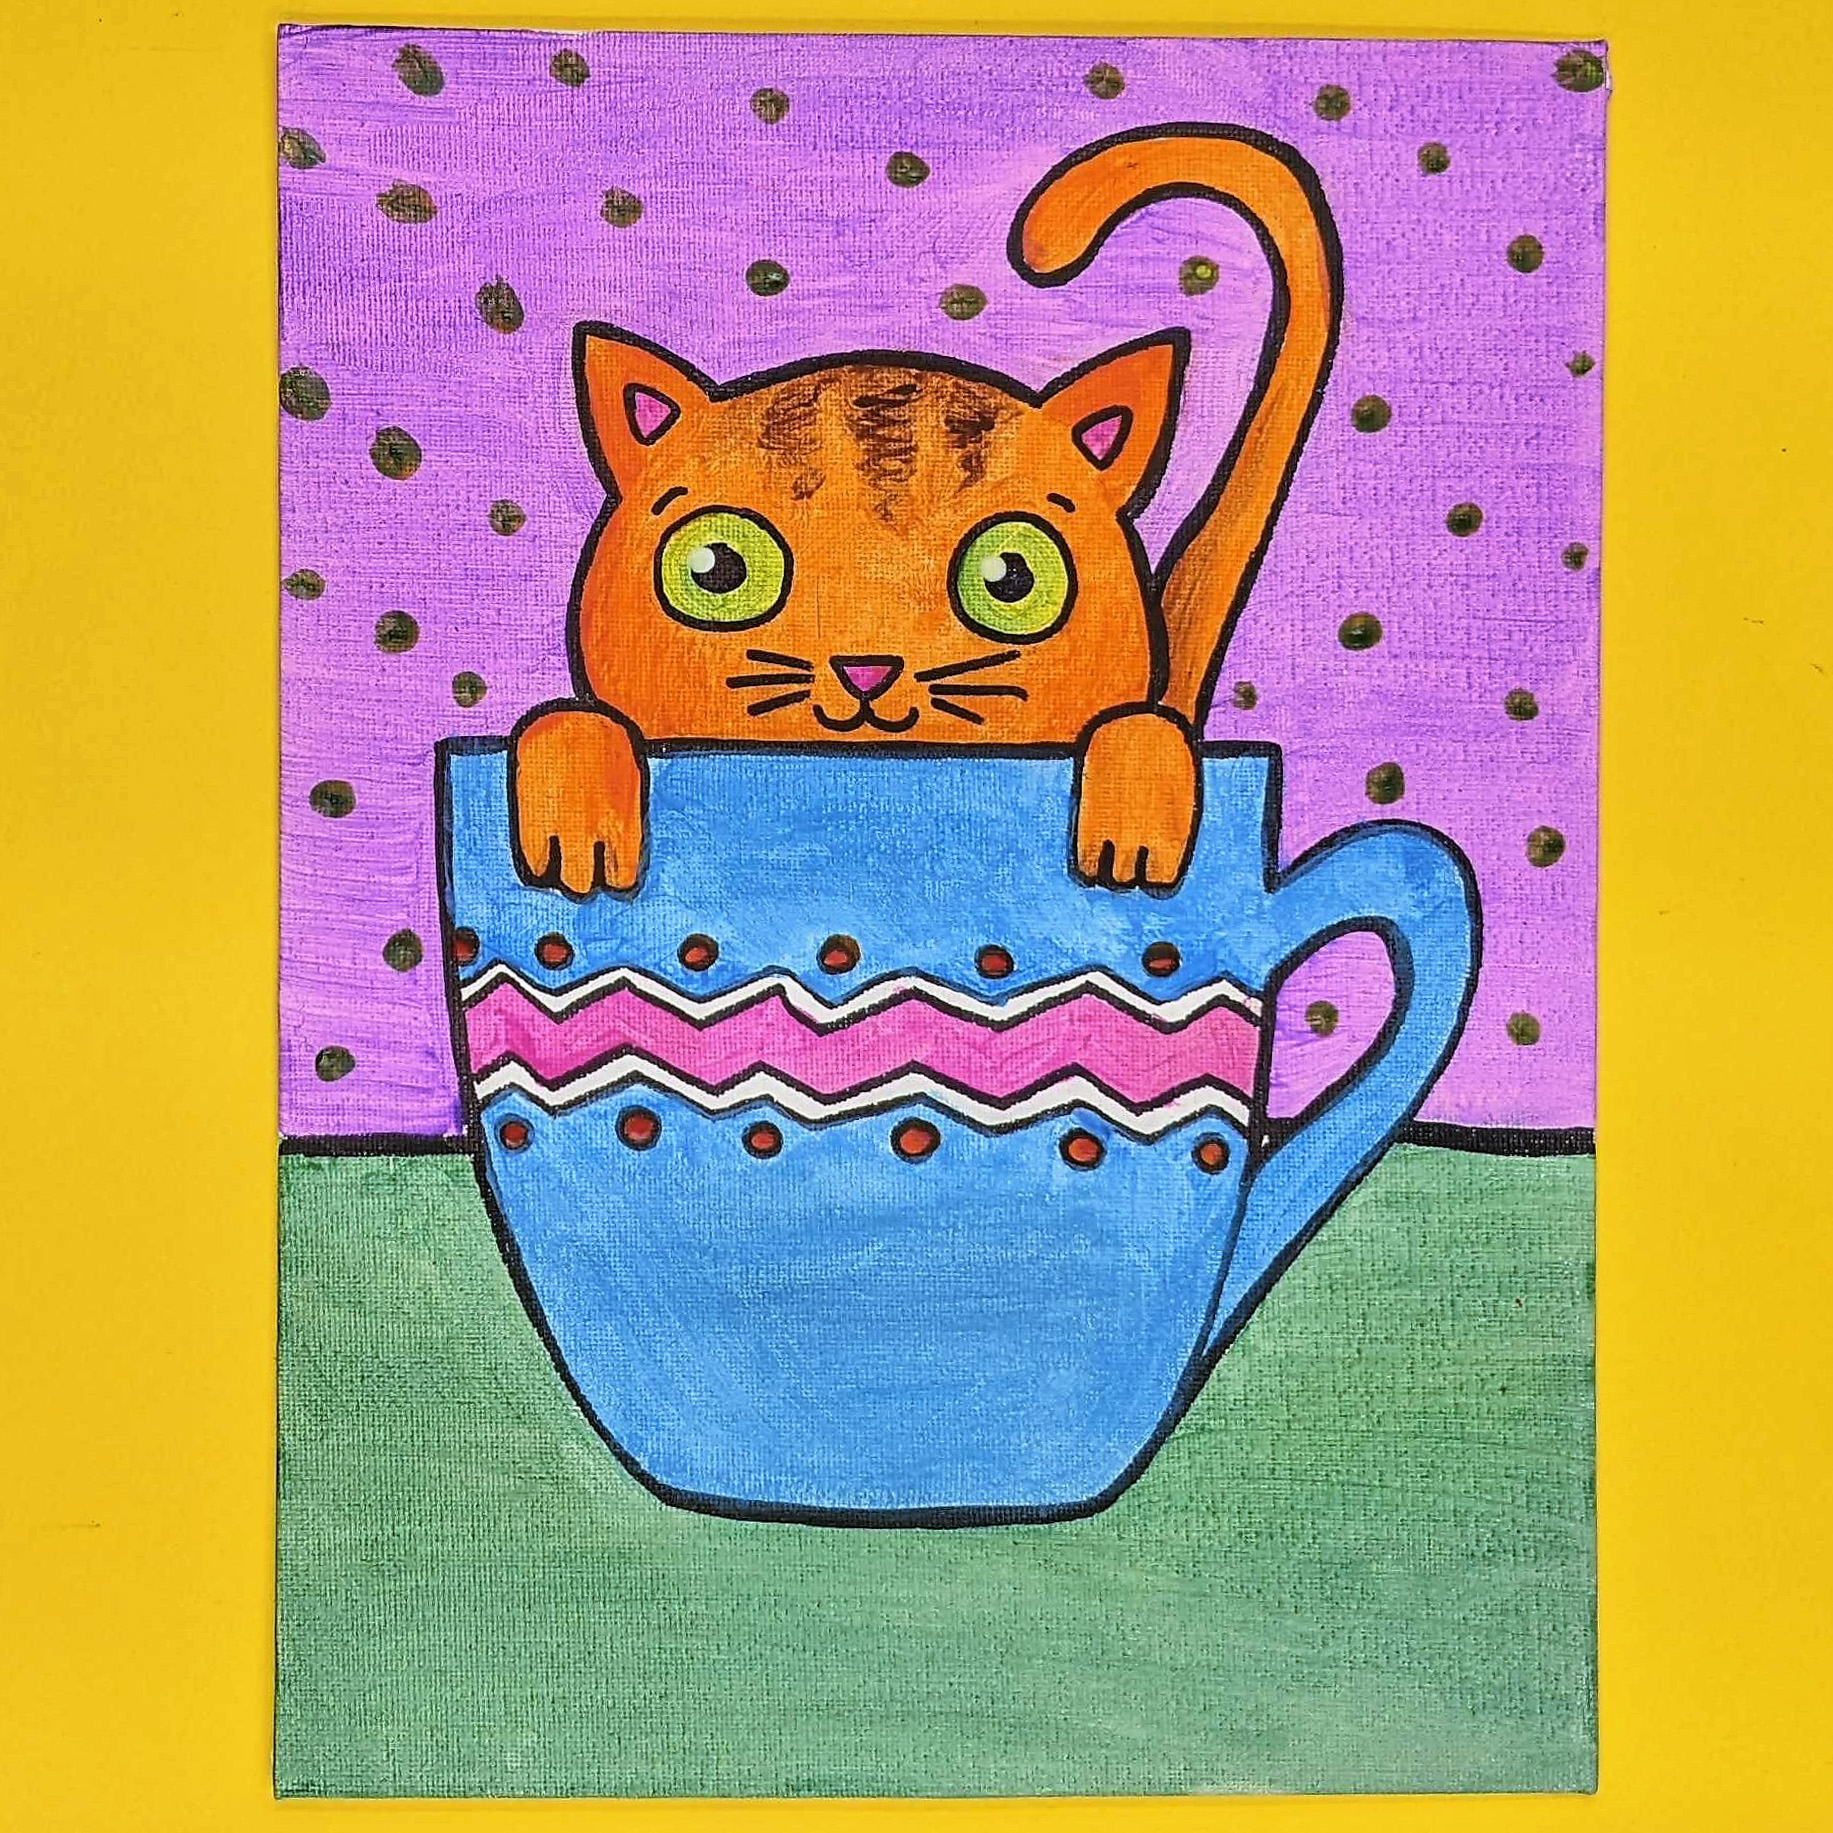 Kidcreate Studio - Dana Point, Teacup Kitten Art Project